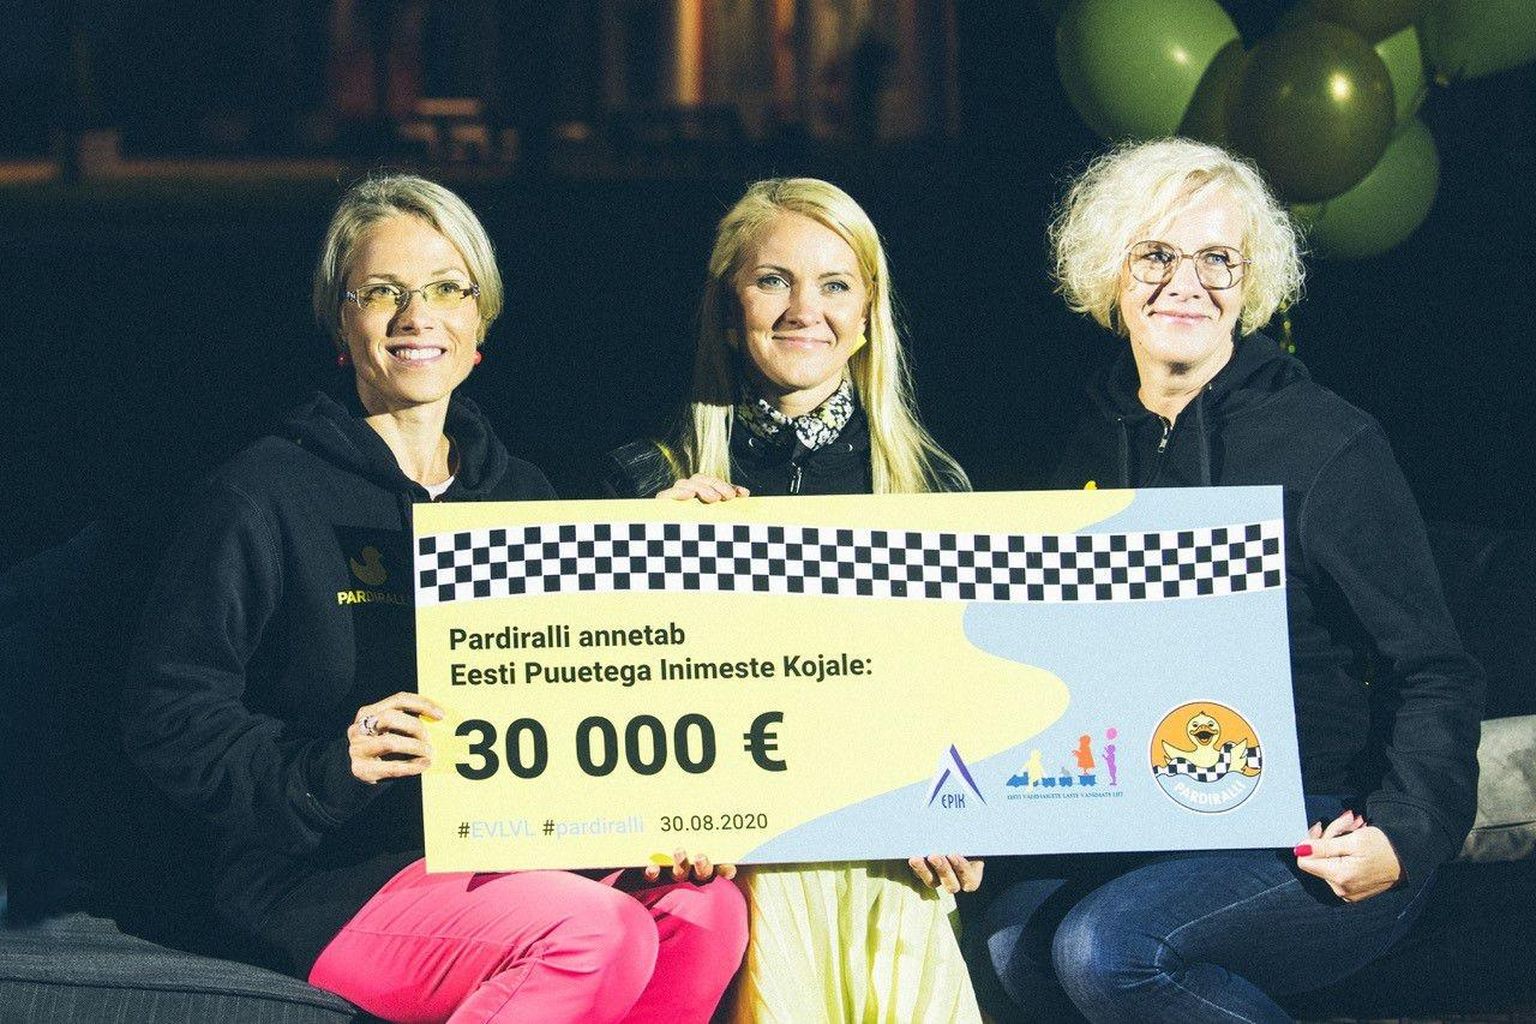 Mullu kogus Pardiralli annetusi üle 400 000 euro, millest 30 000 eurot läks suure hooldusvajadusega laste peredele, et kurnatud emad-isad saaksid annetuste toel veidi puhata.